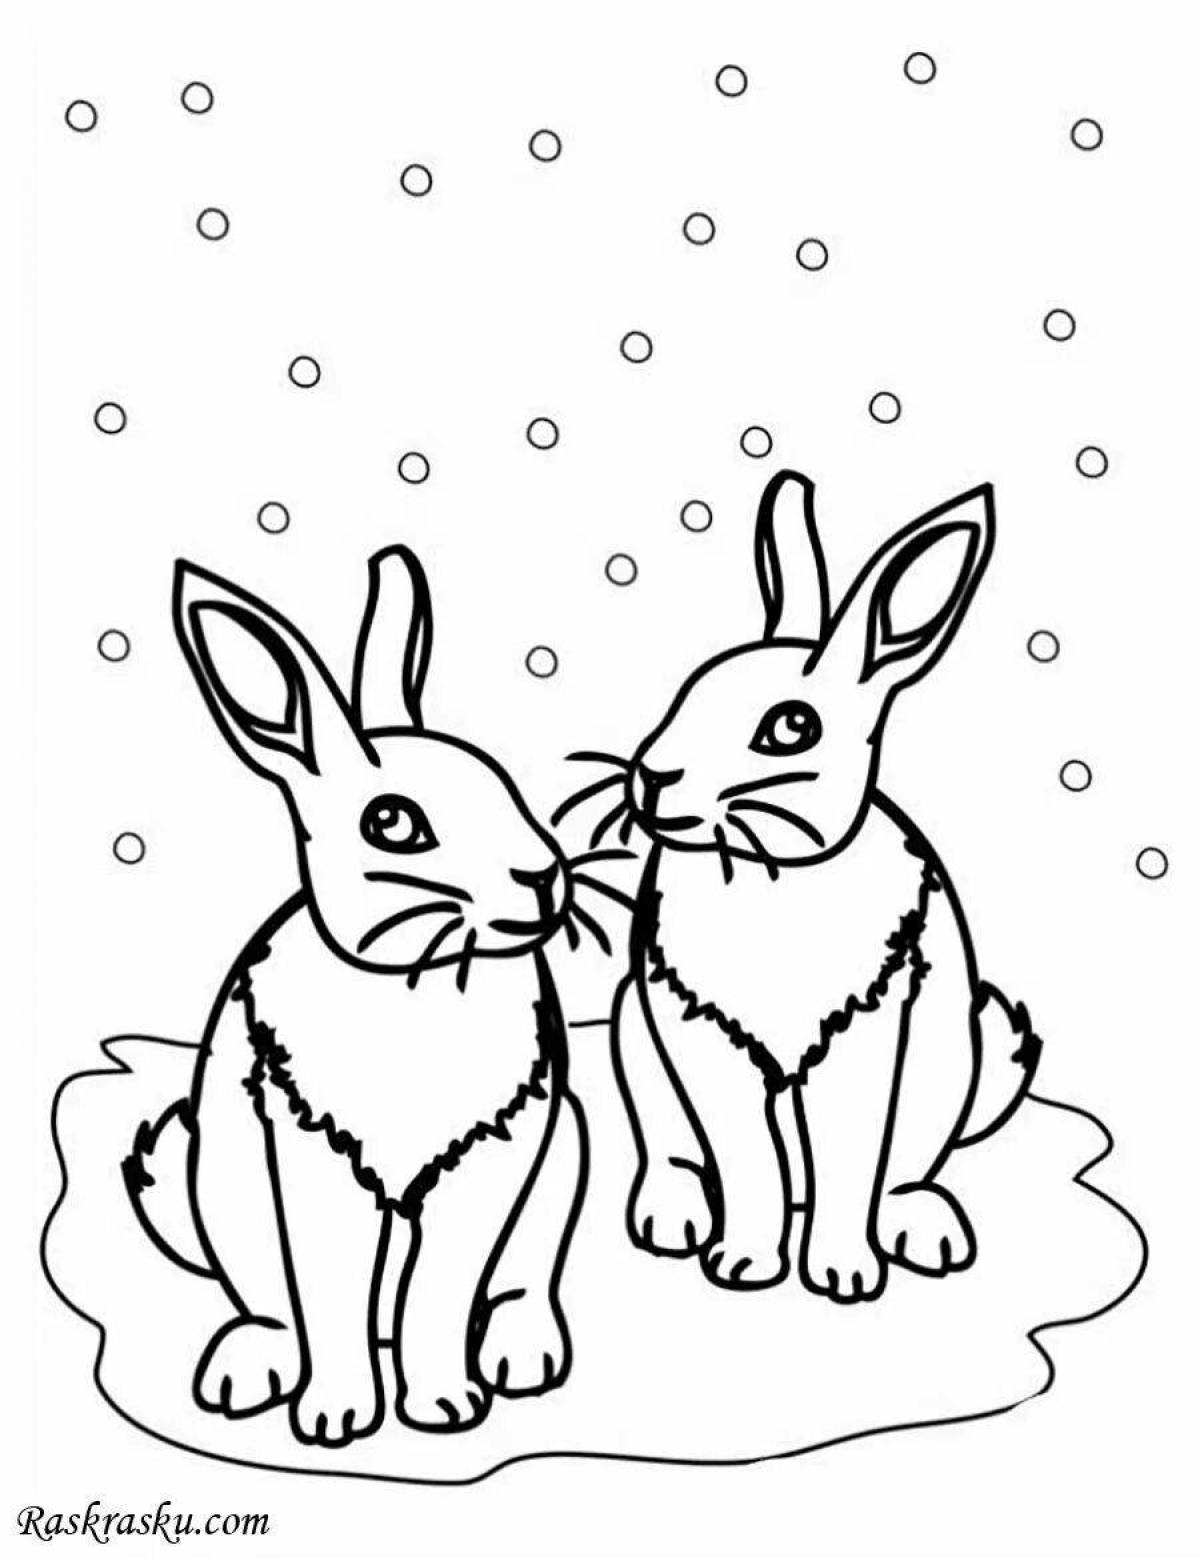 Радостная раскраска для детей дикие животные зимой